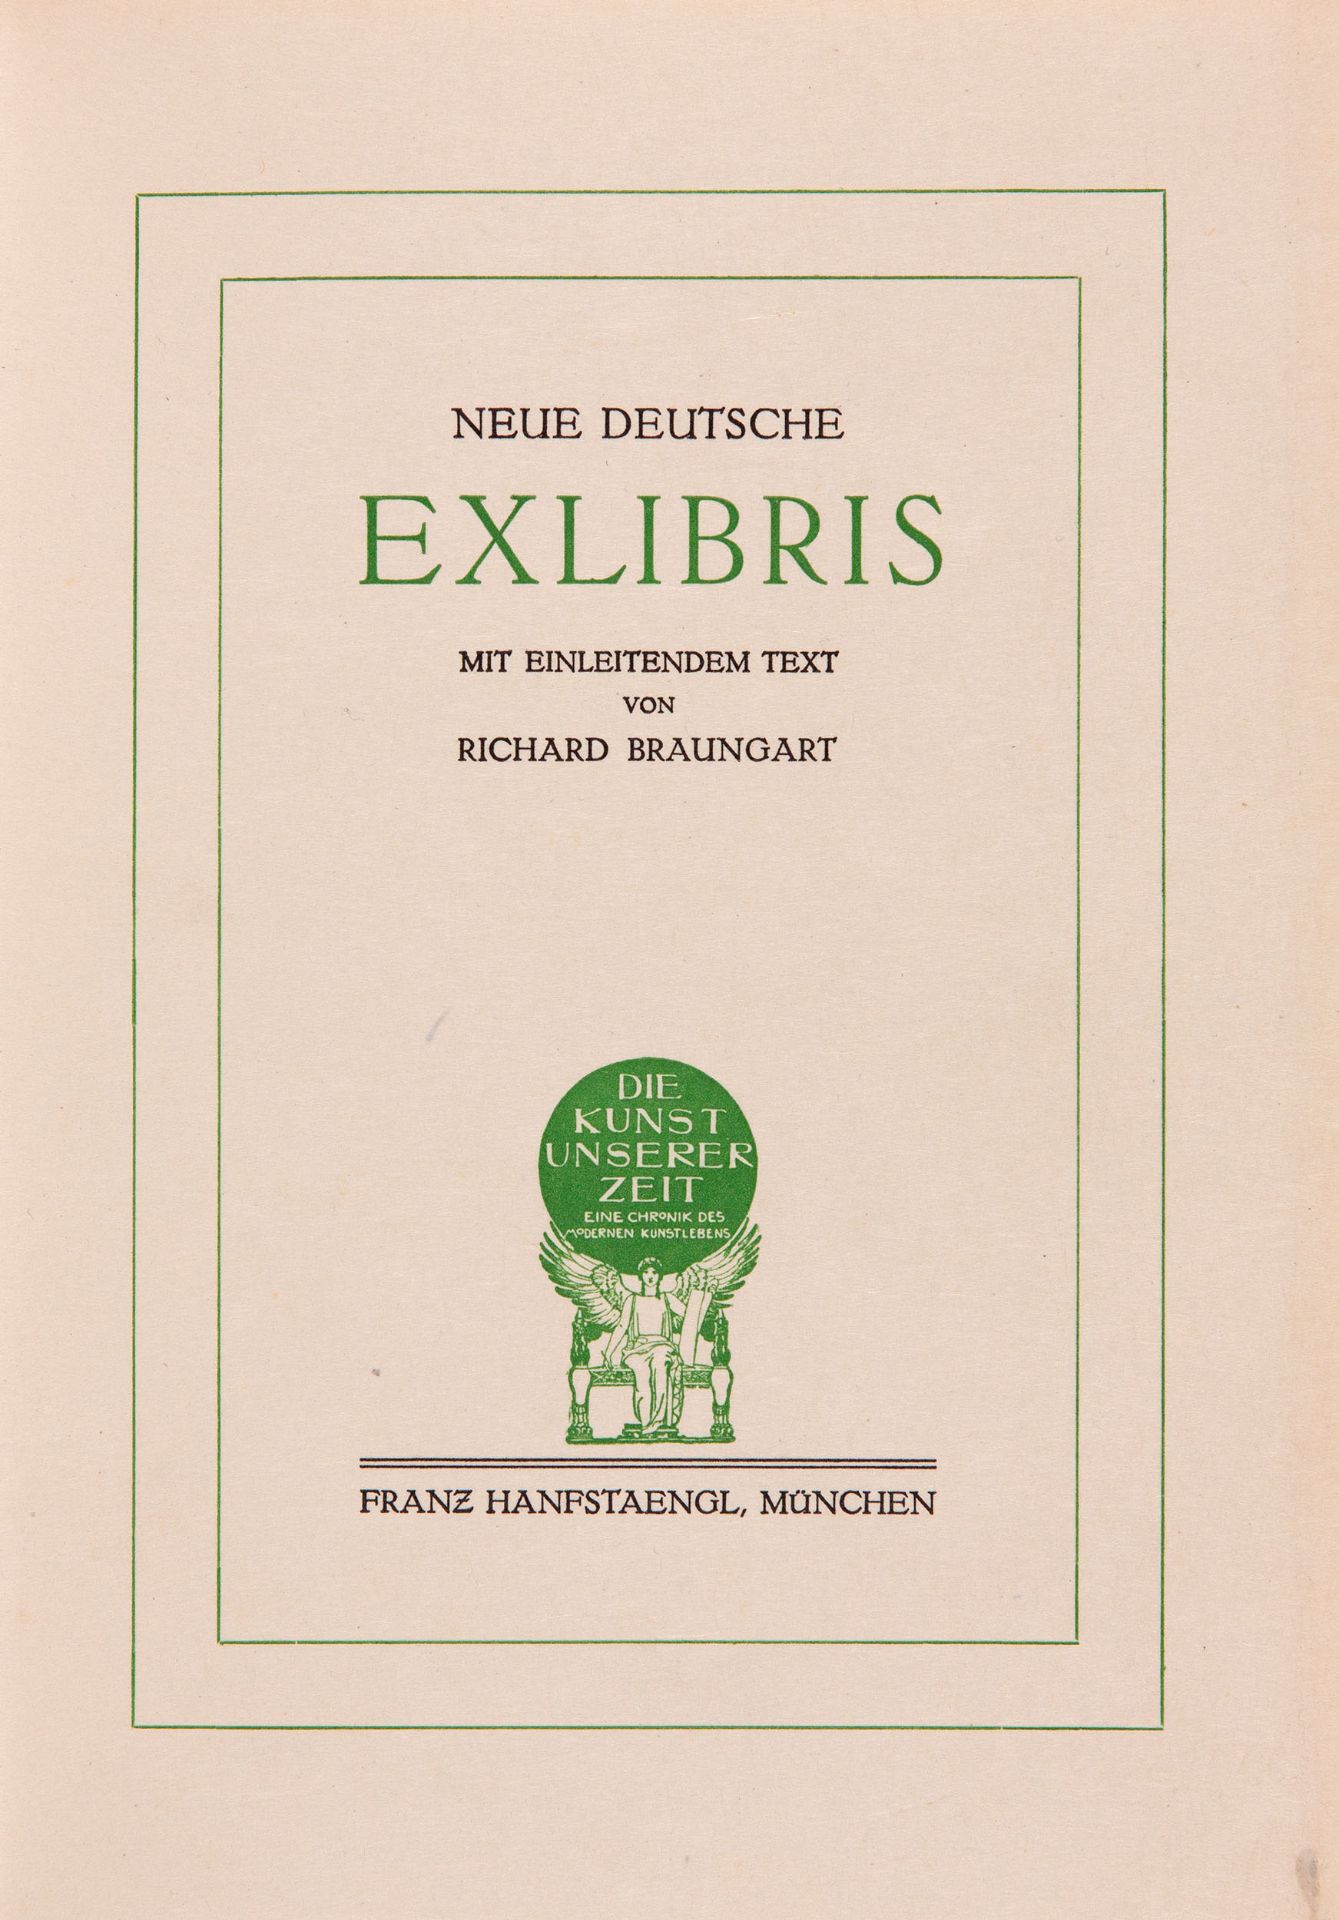 R. Braungart, Neue Deutsche Exlibris. München 1913. - Ex. 48/50, Sonderausg. auf Japan.